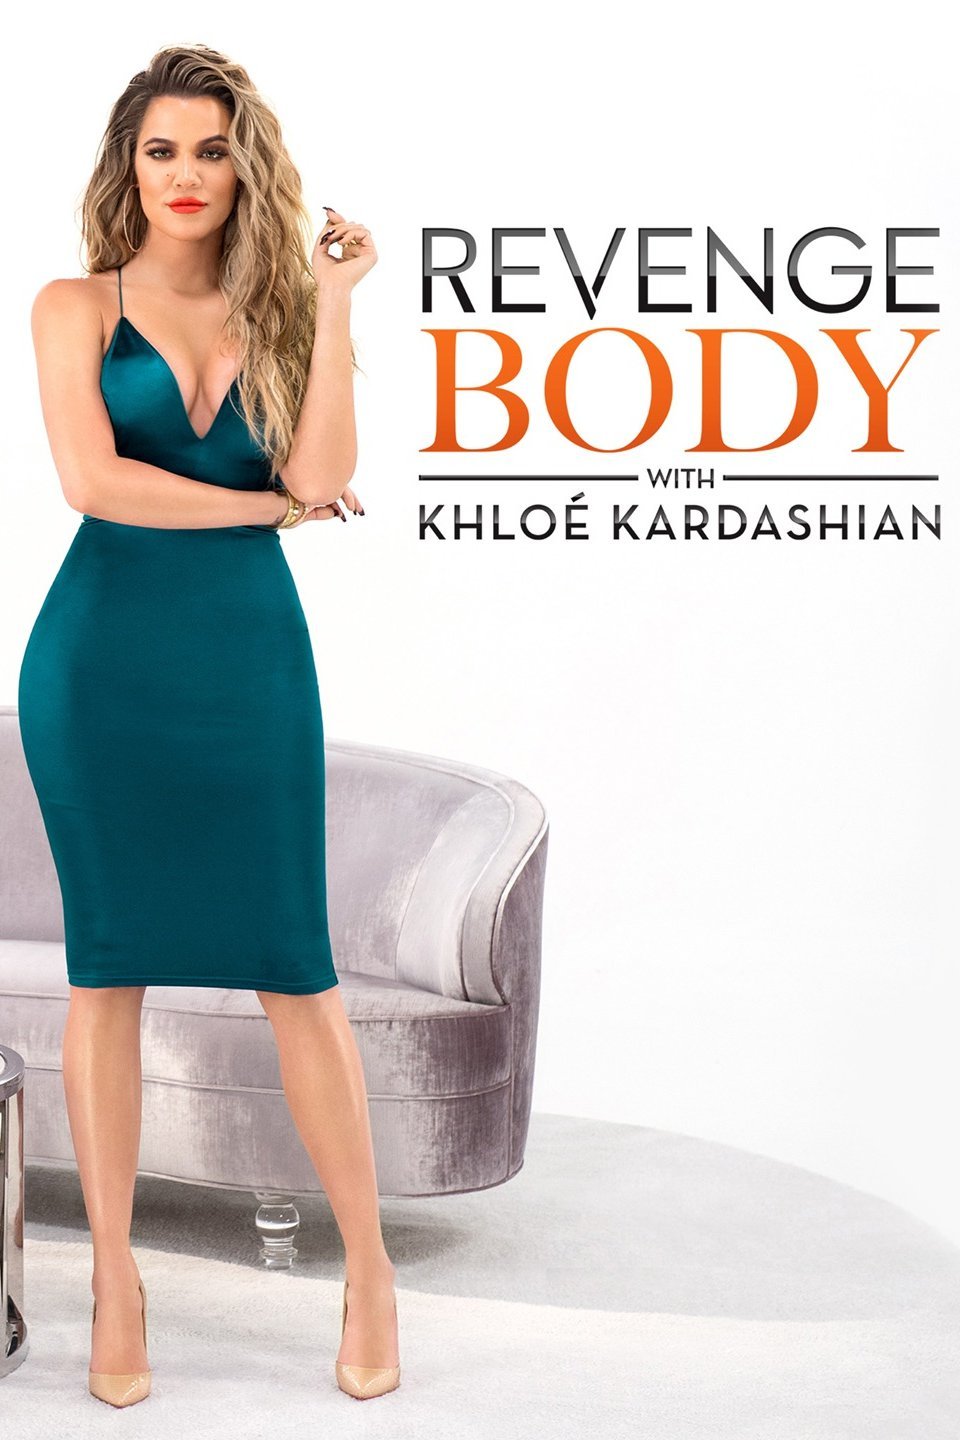 How This Kholé Kardashian REVENGE BODY Episode Missed the Mark